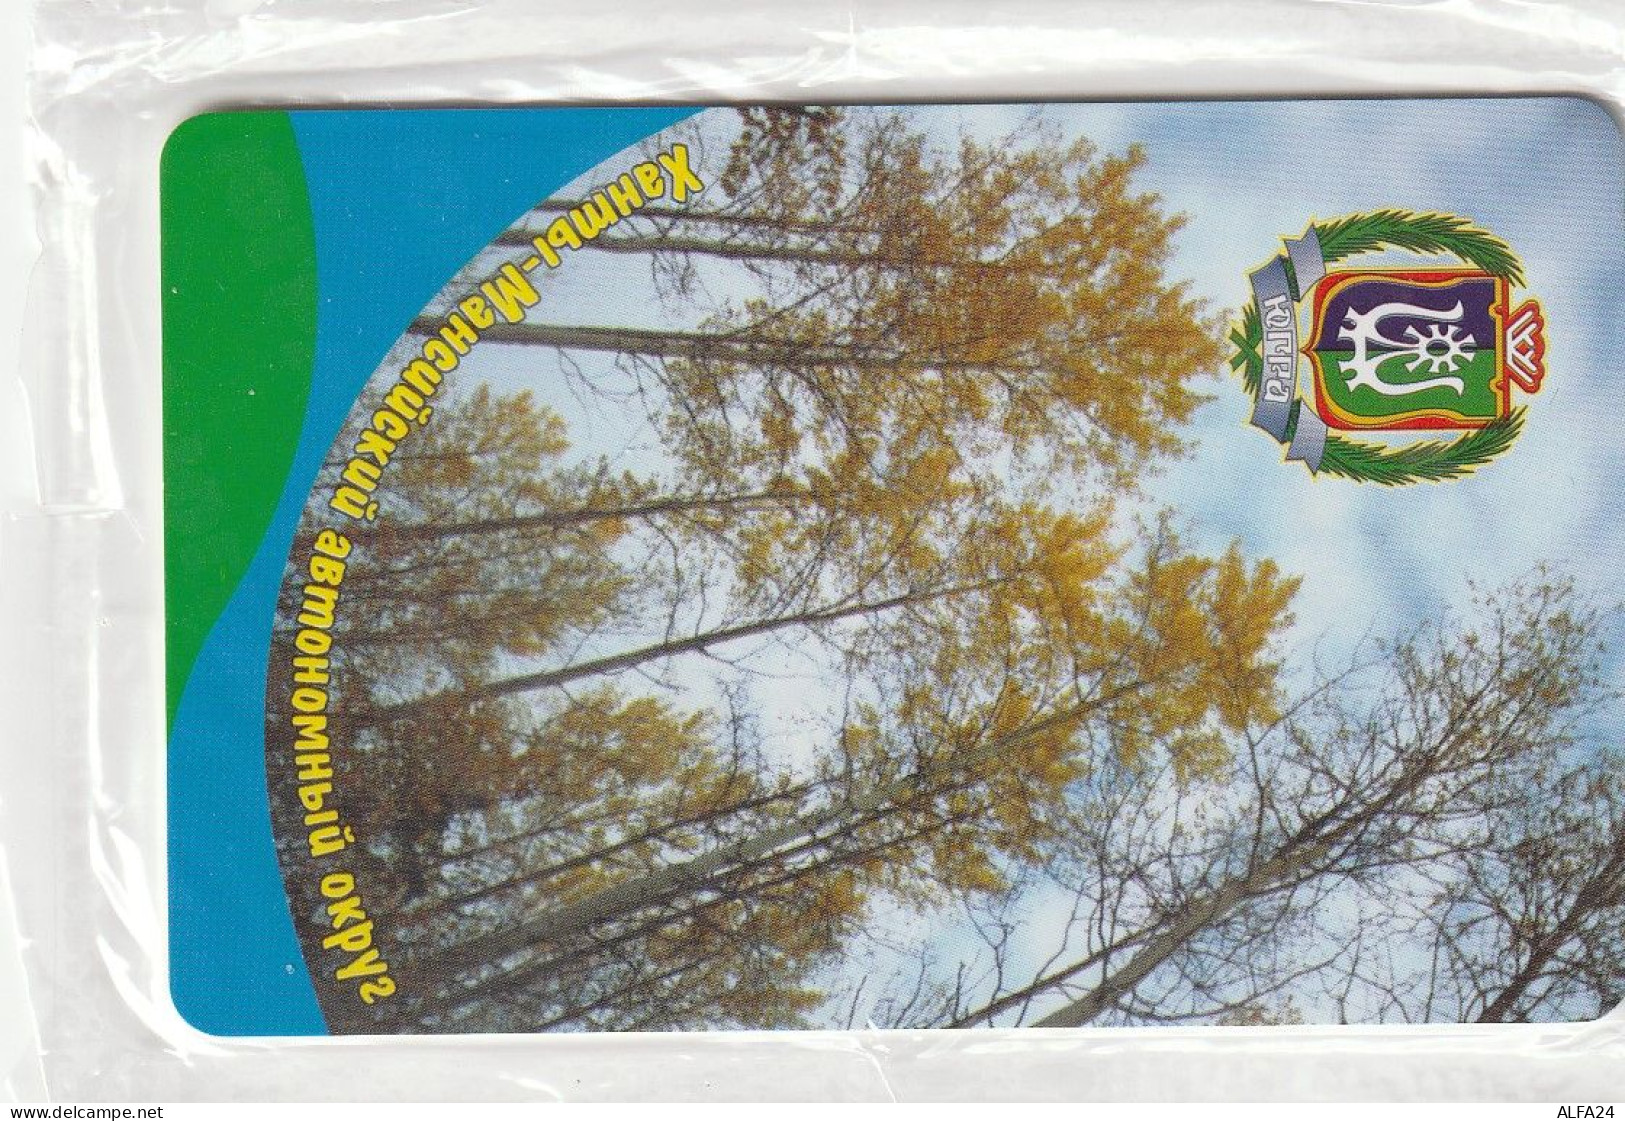 PHONE CARD RUSSIA Khantymansiyskokrtelecom -new Blister (E9.21.8 - Russie